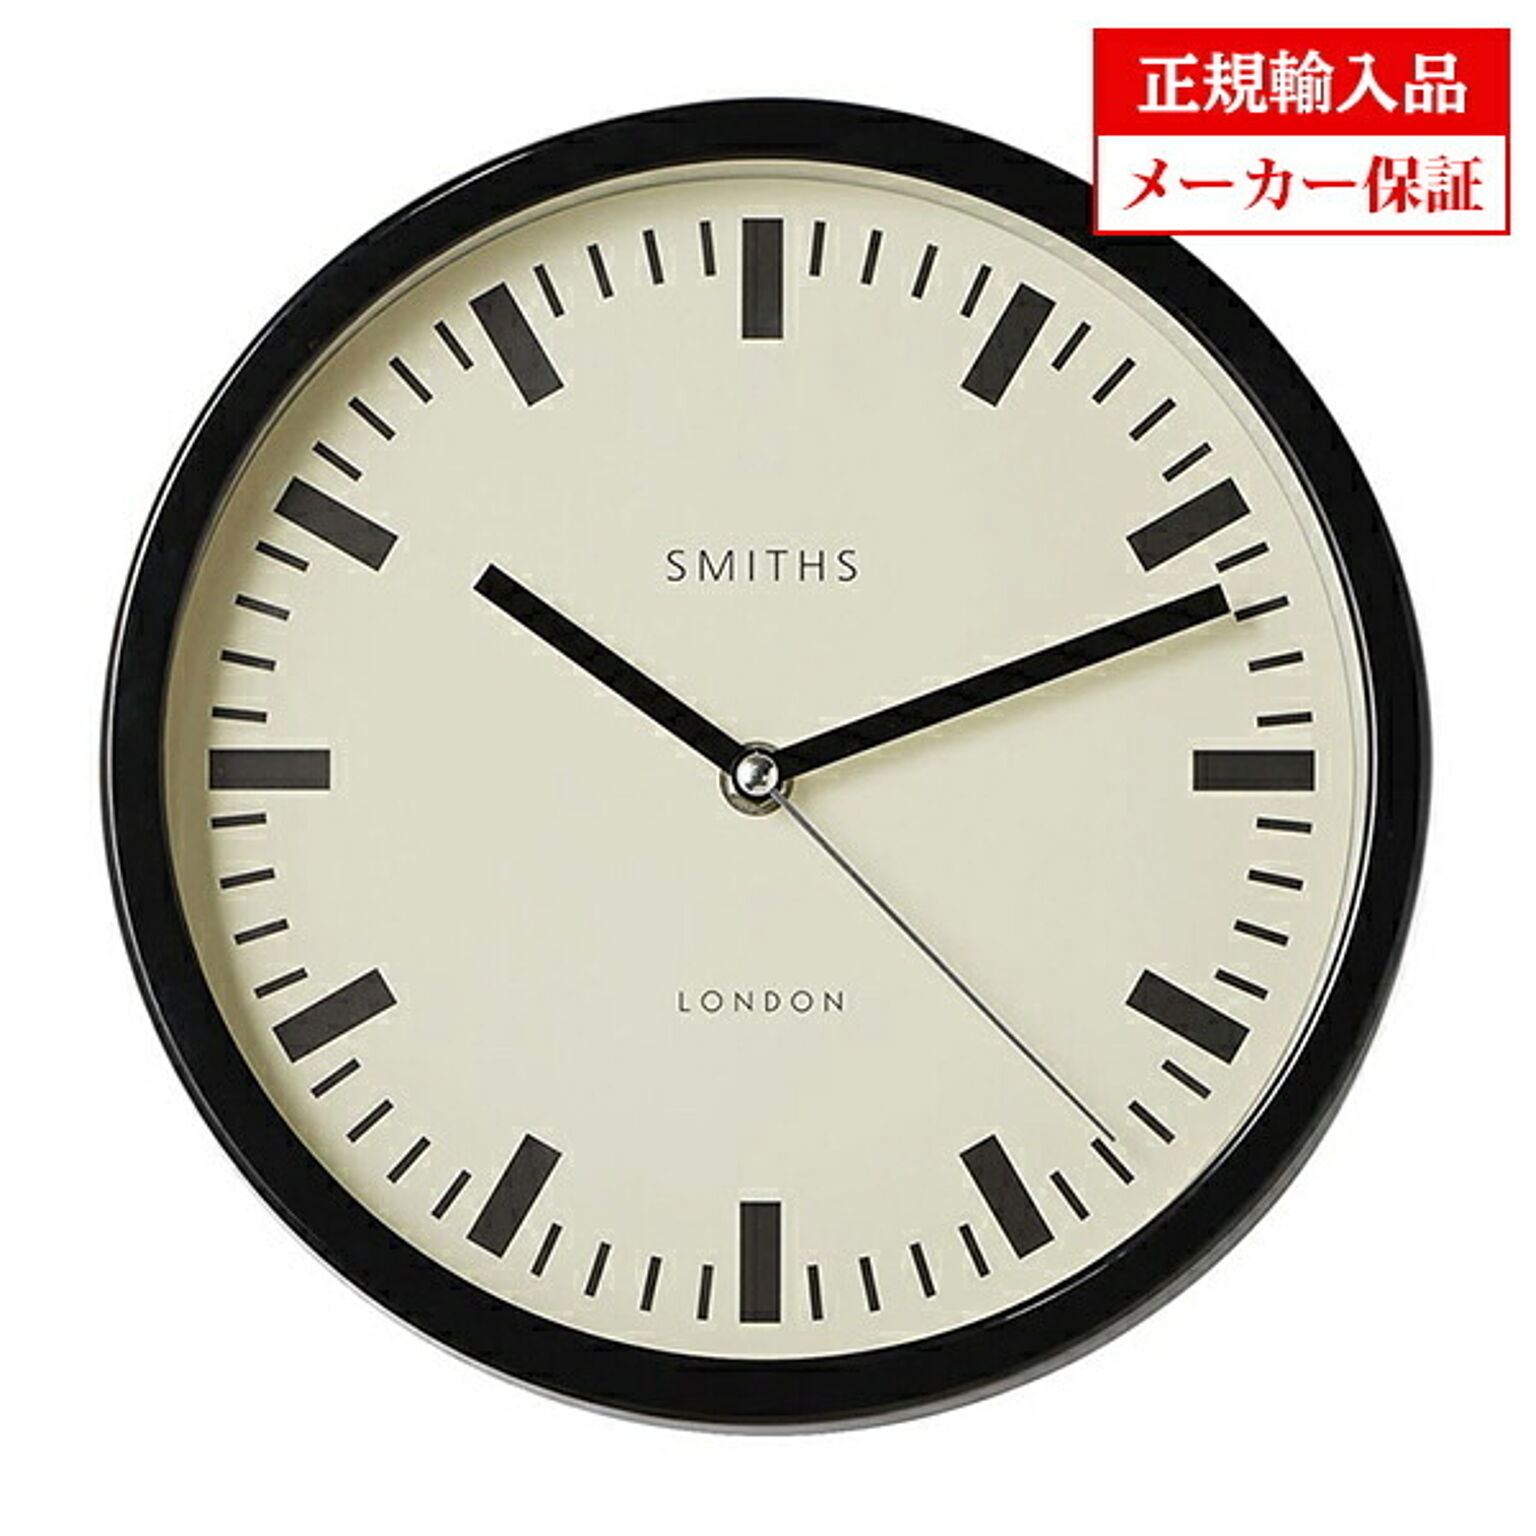 イギリス ロジャーラッセル 掛け時計 [SM/SM/SWISS] ROGER LASCELLES SMiths clocks スミスデザインクロック 正規輸入品